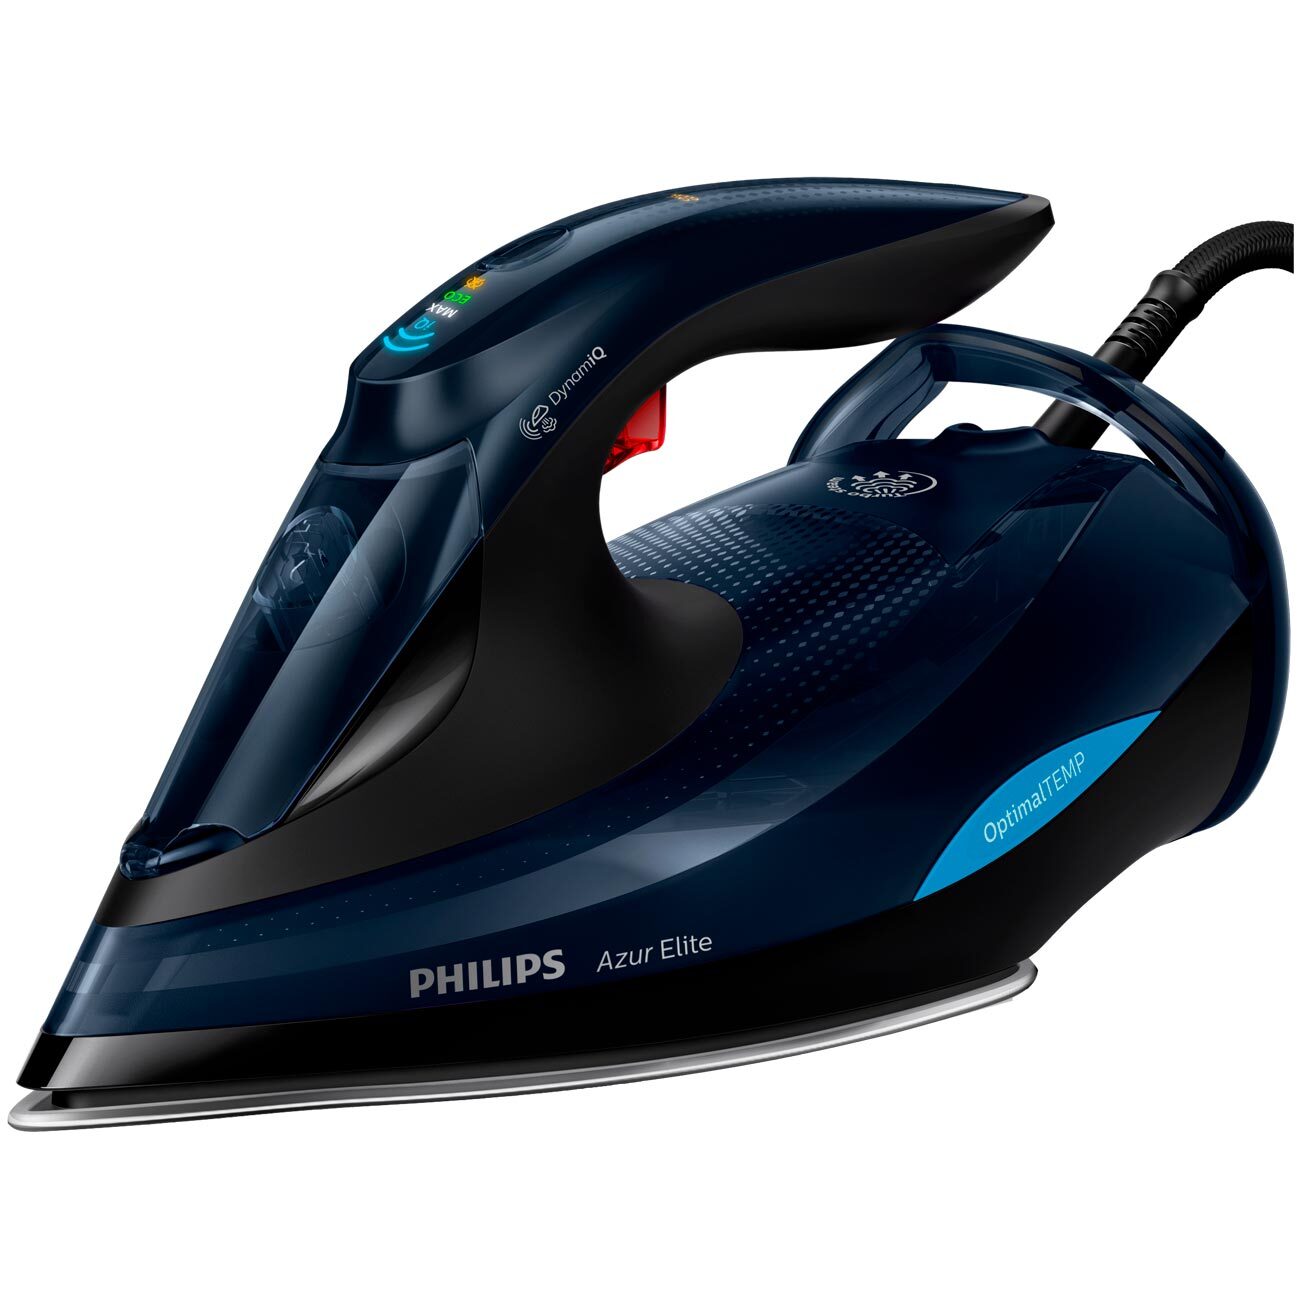 Philips gc купить. Утюг Philips gc5034/20 Azur Elite. Philips Azur Elite gc5033. Утюг Philips gc5033/80 Azur Elite. Утюг Philips gc5039/30 Azur Elite.